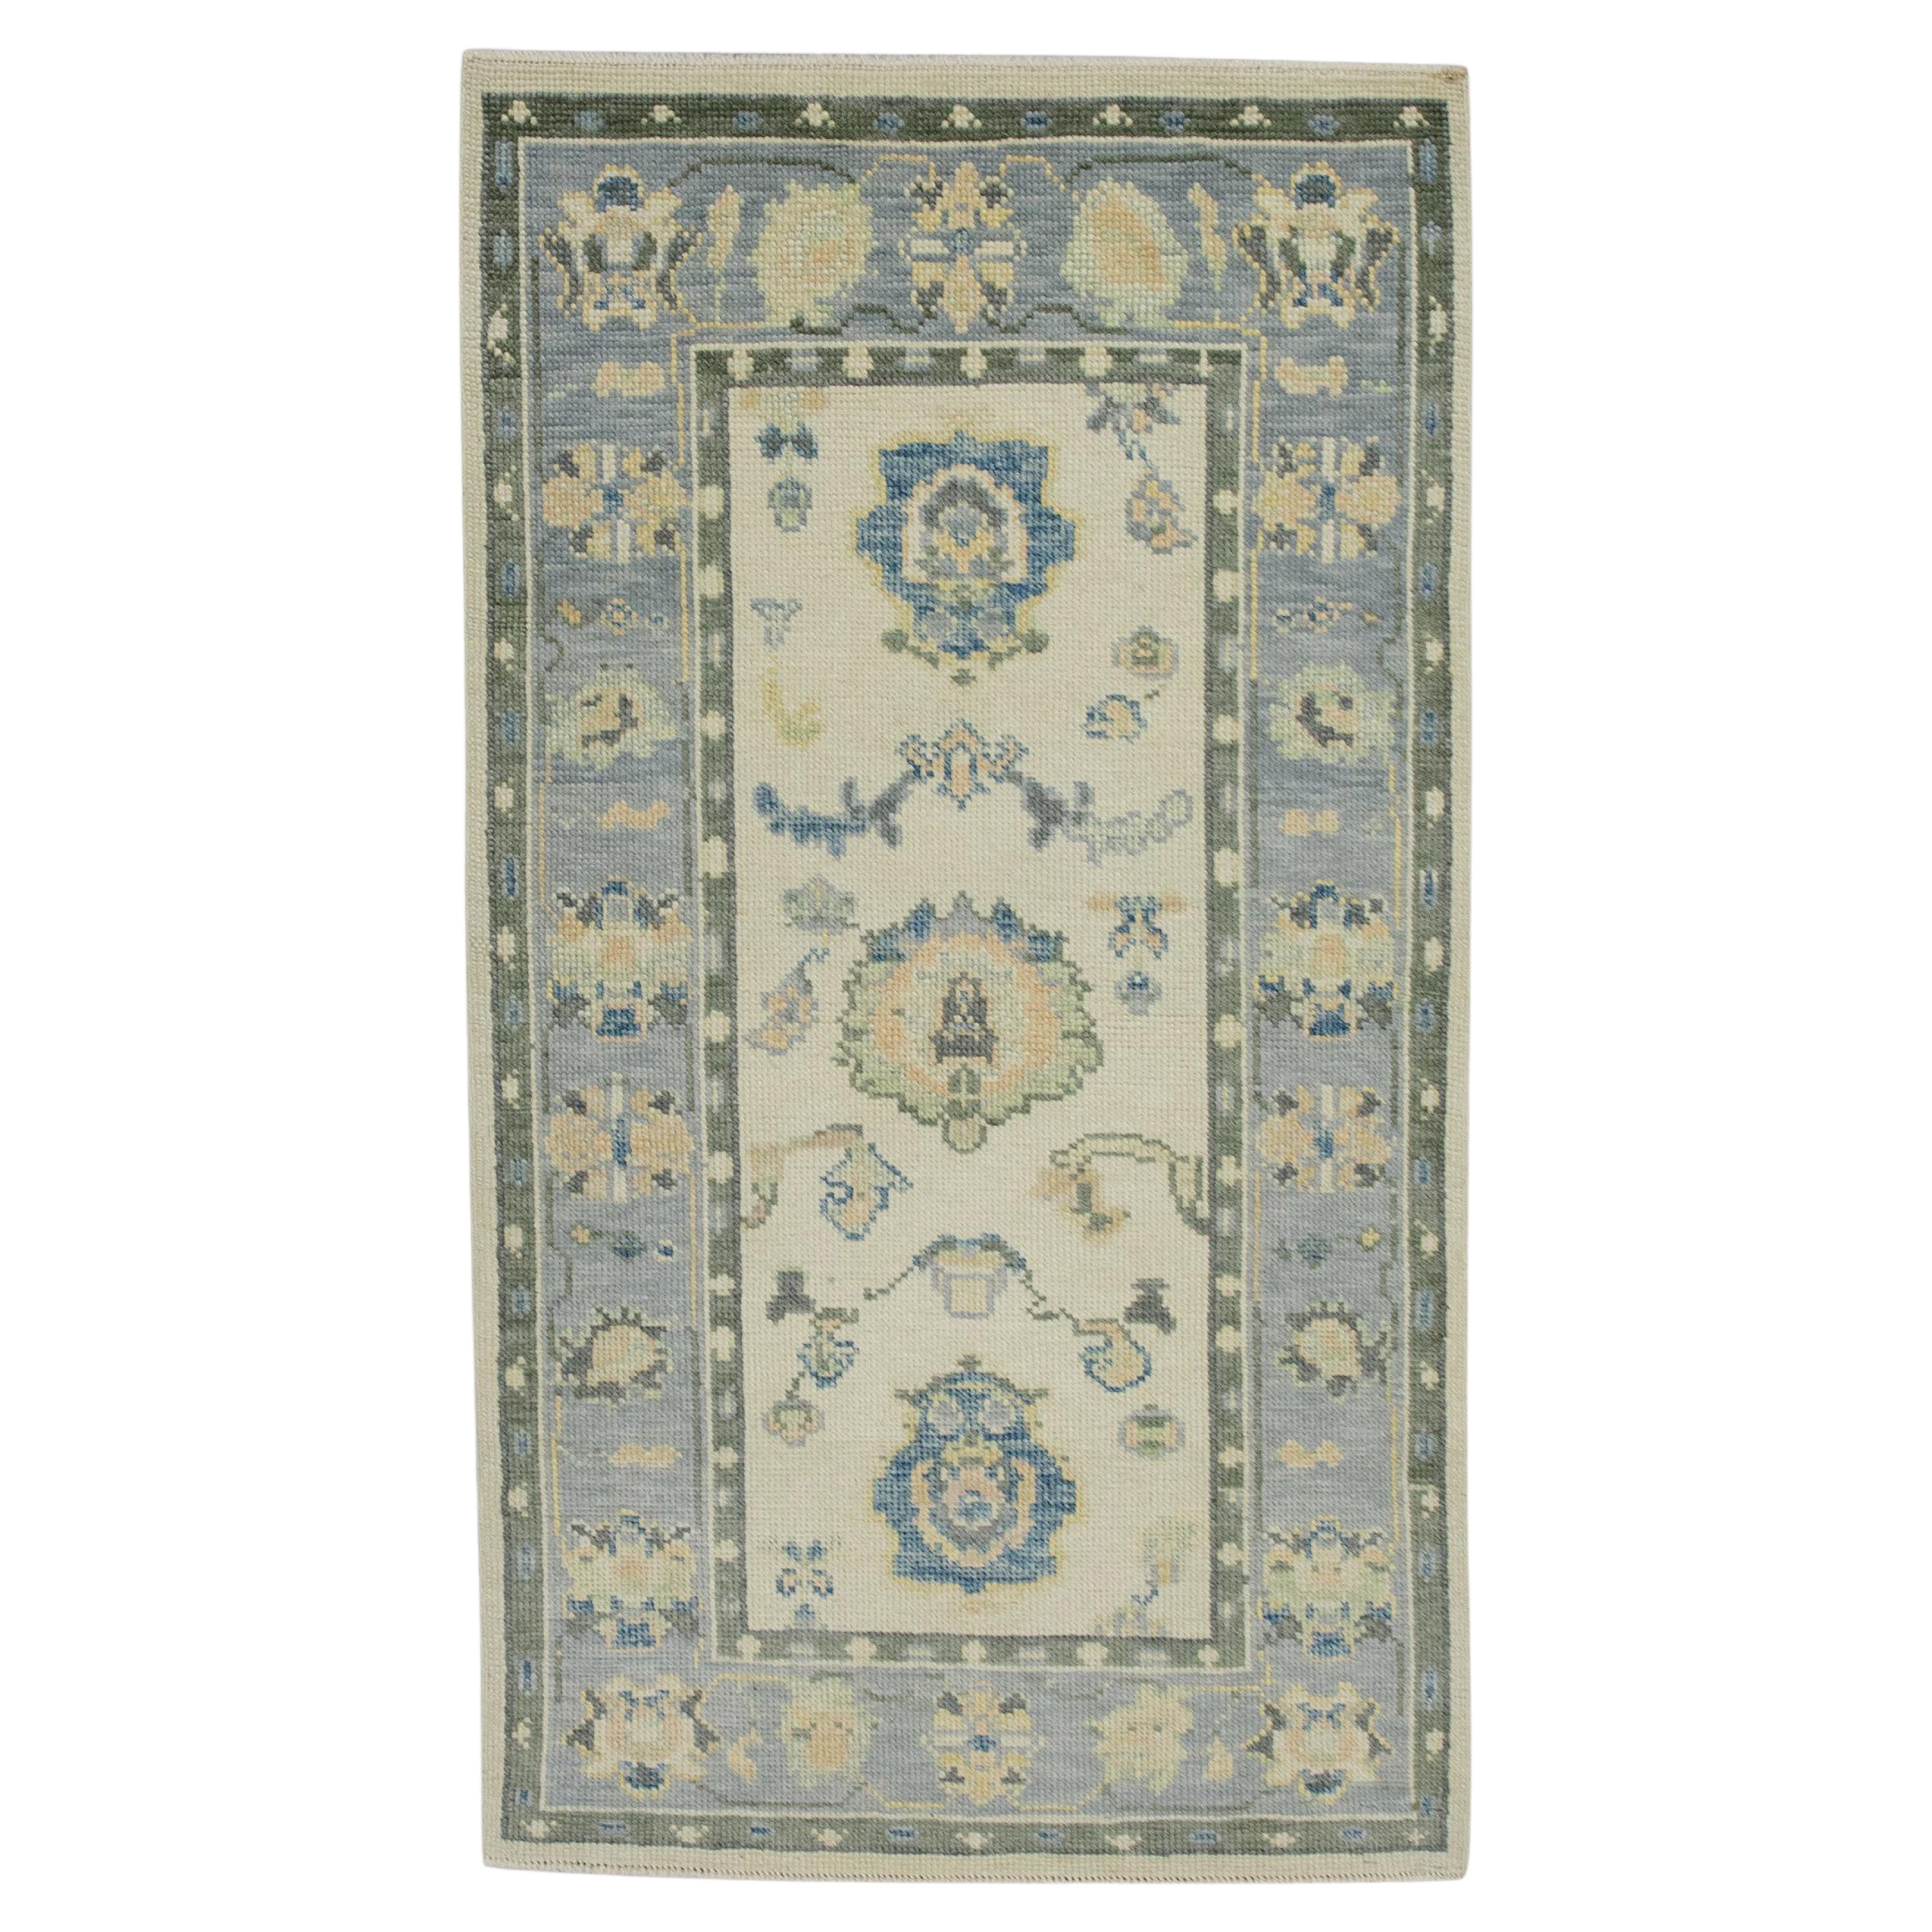 Handgewebter türkischer Oushak-Teppich aus Wolle in Grün & Blau mit Blumenmuster 2'10" x 5'1"